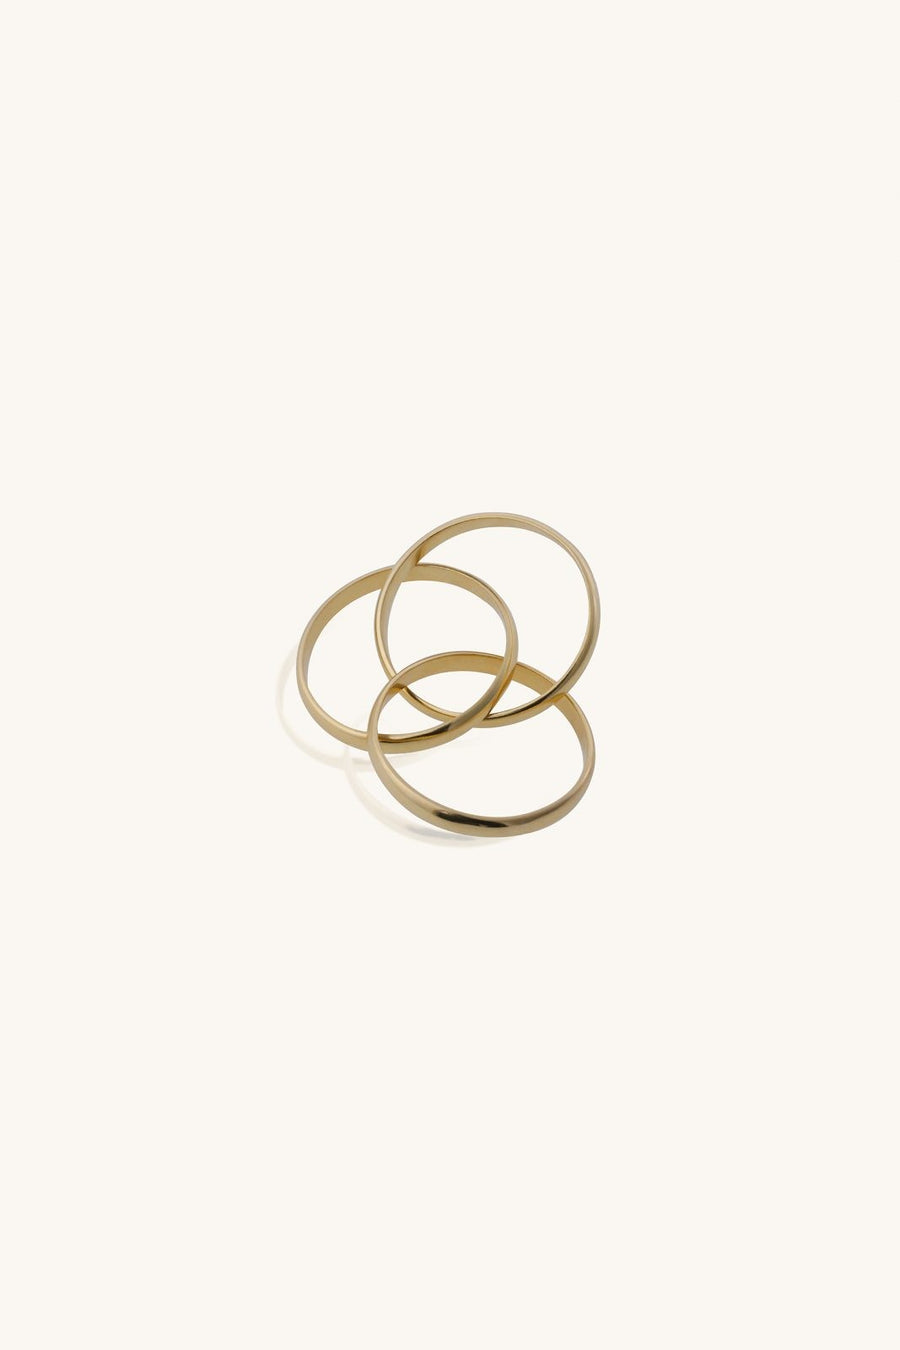 Golden Interlock Ring, Linked Ring, Interlocking Circle Ring, Modern Ring